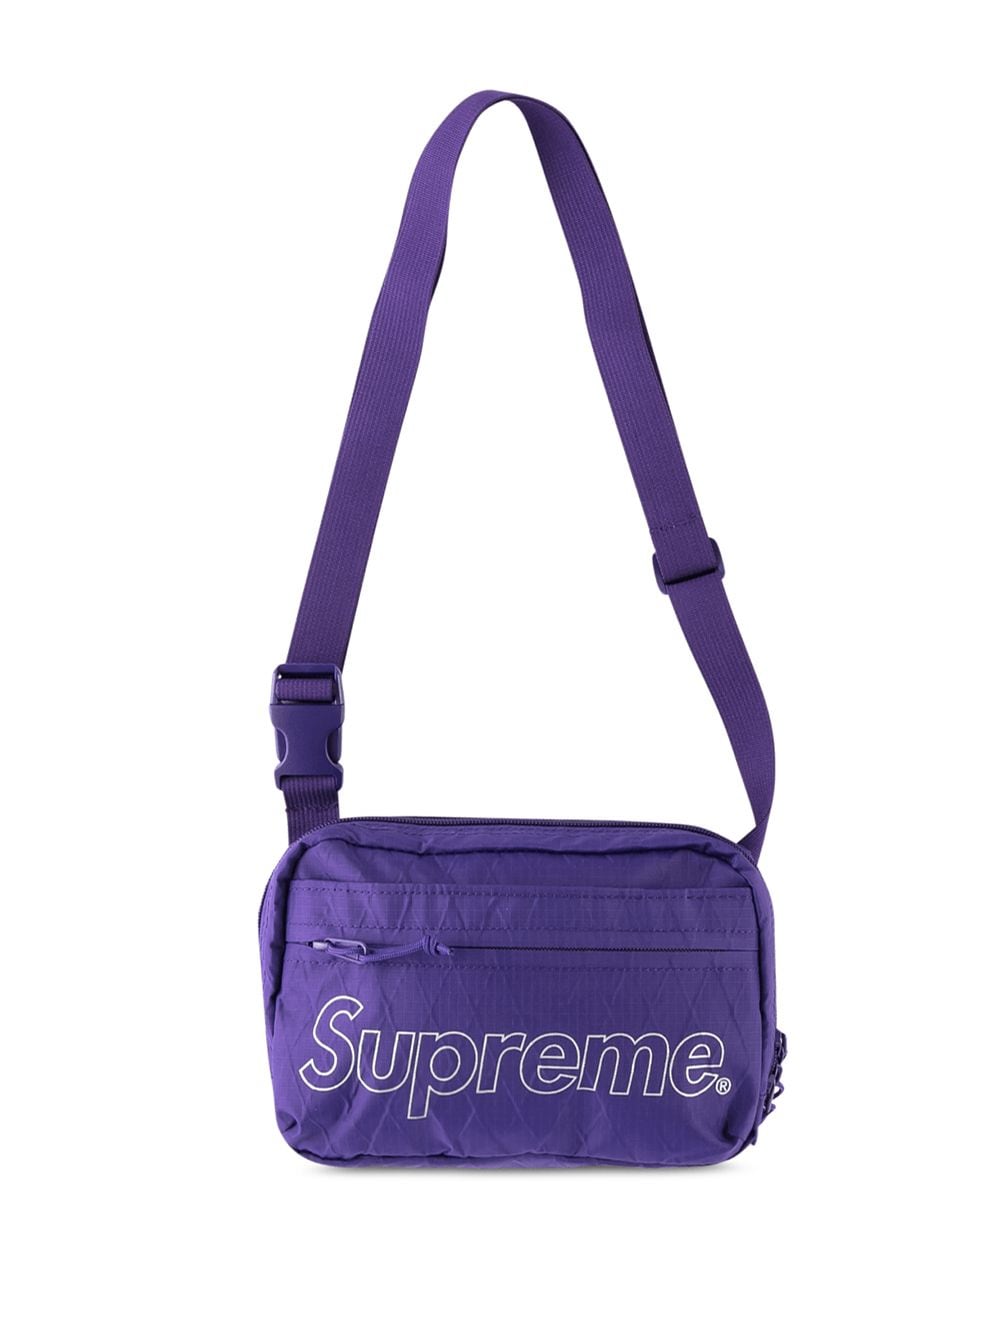 supreme shoulder bag fw18